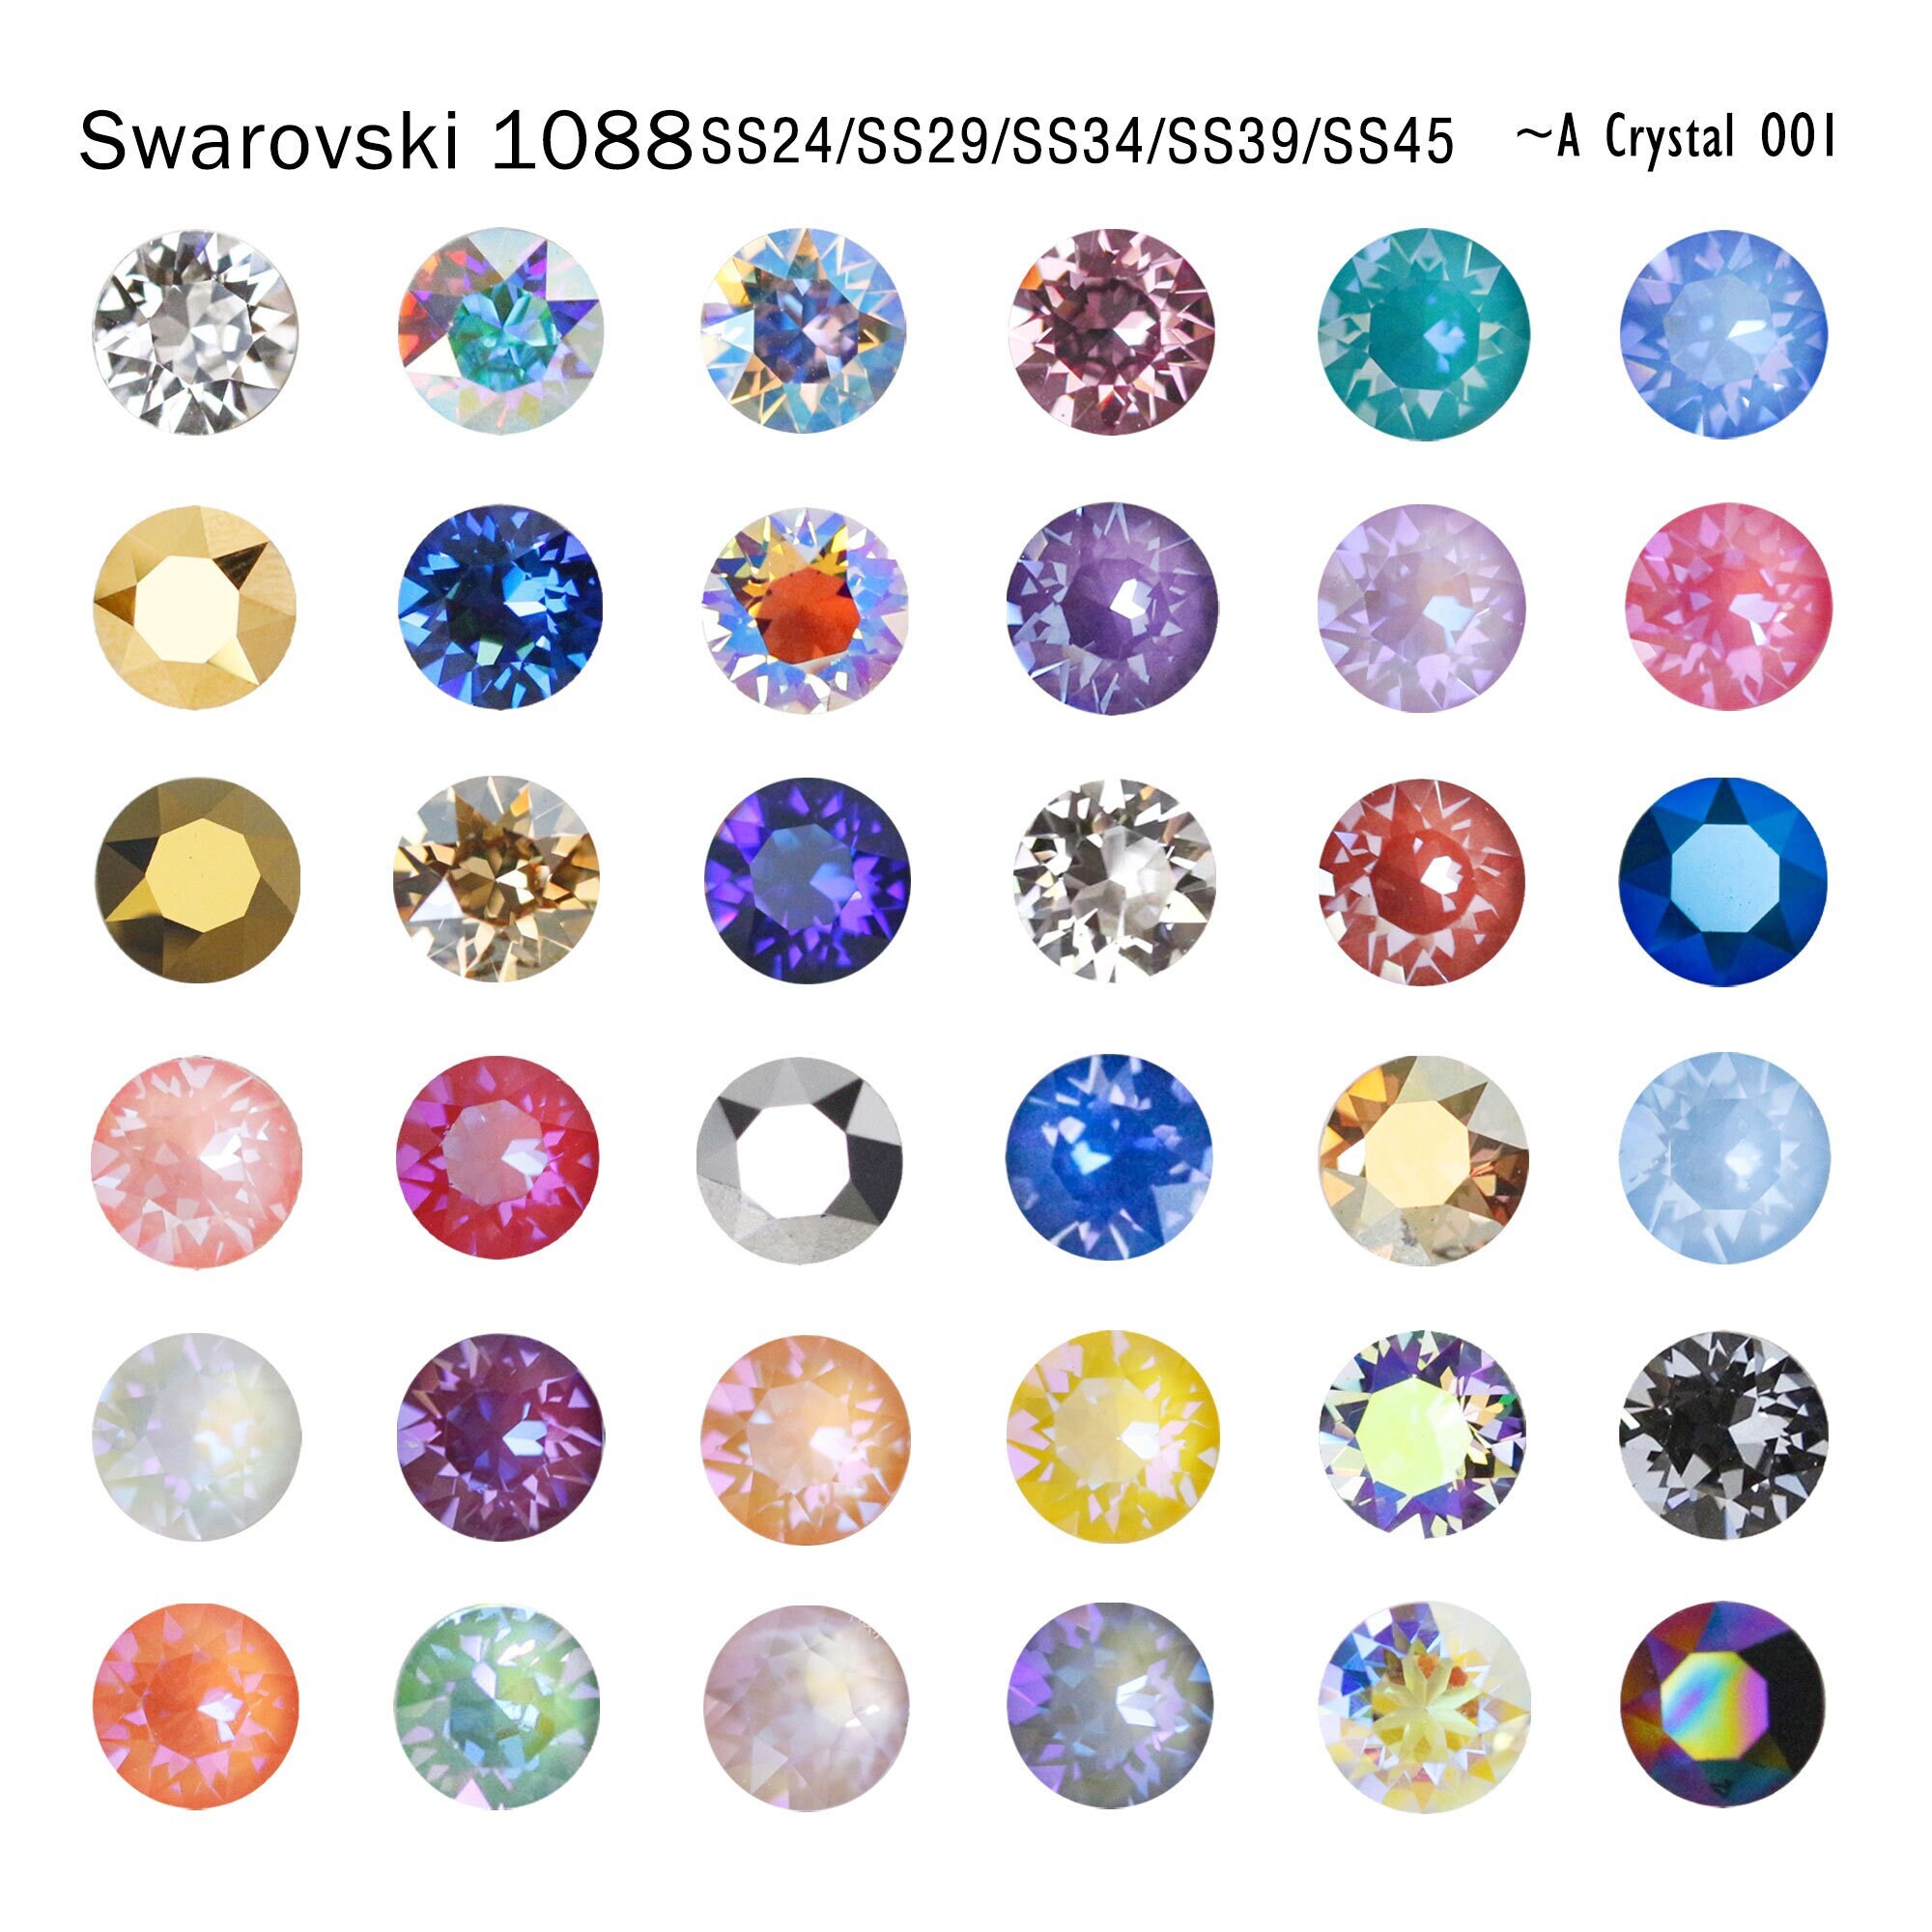 Swarovski Crystals Rhinestones Gems Flat Back Crystal AB HOT